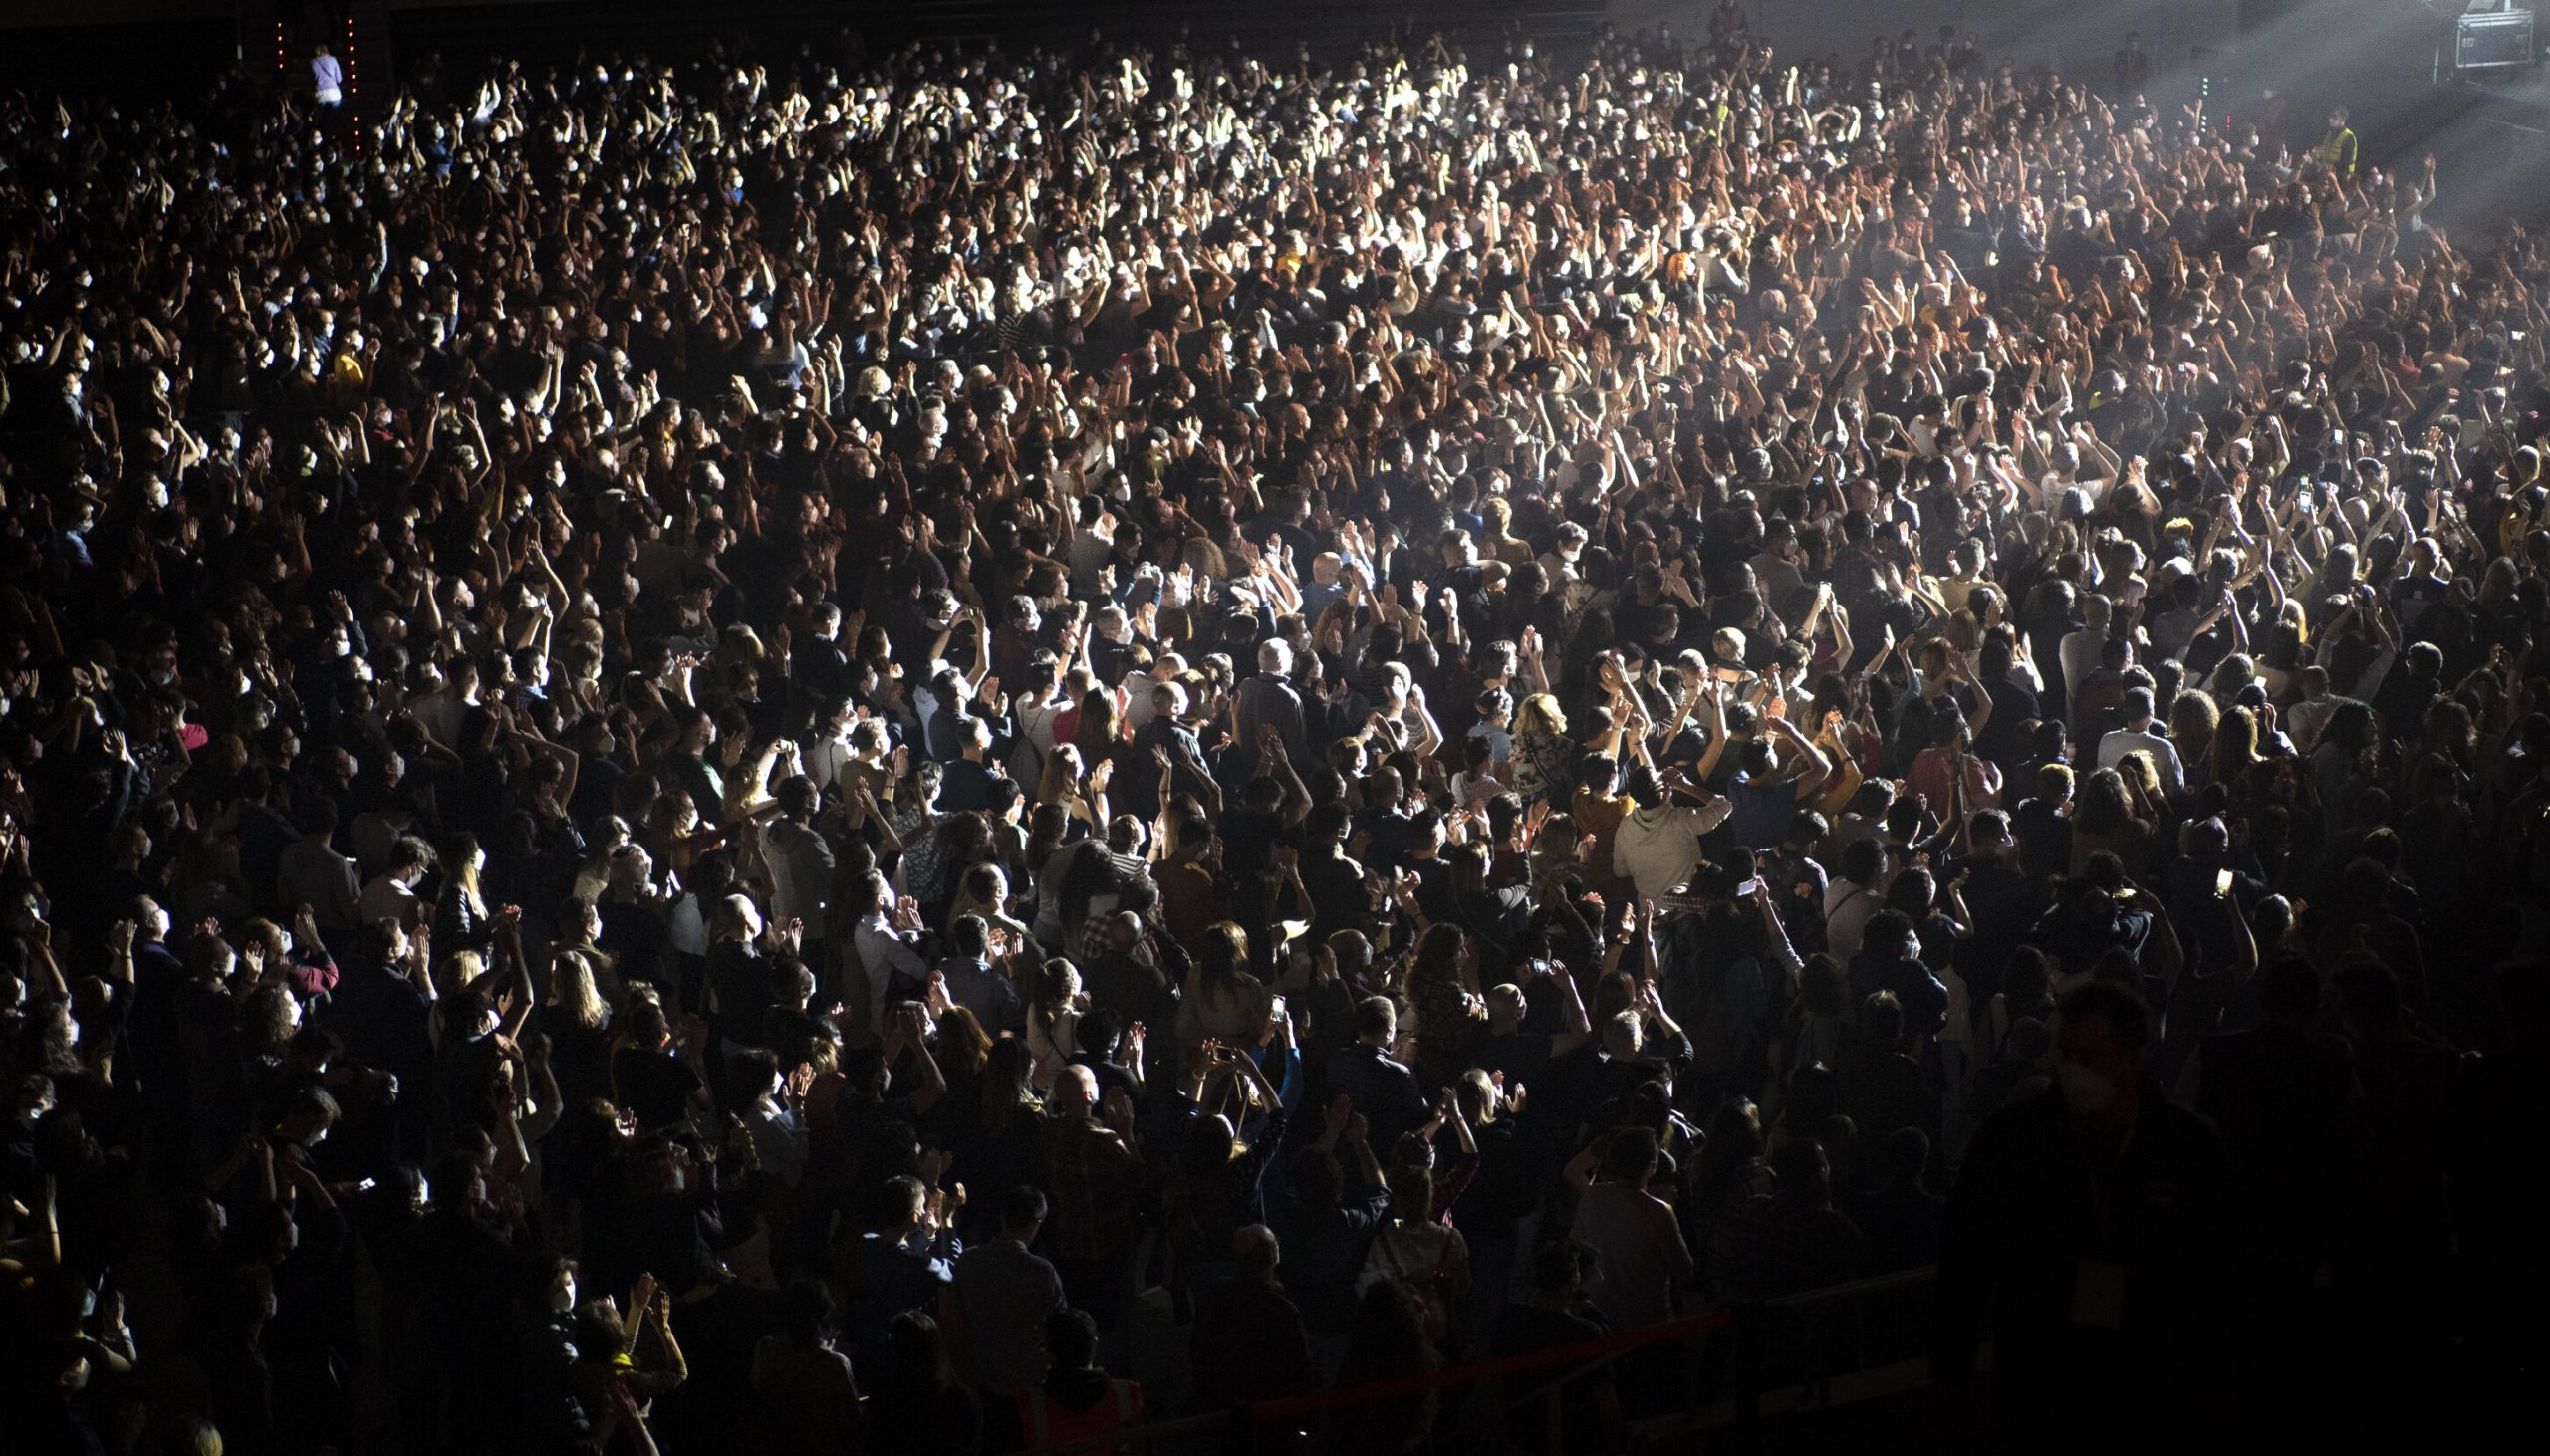 Barcelona| „Niciun semn de contaminare Covid” în timpul concertului cu 5.000 de persoane, arată rezultatele studiului